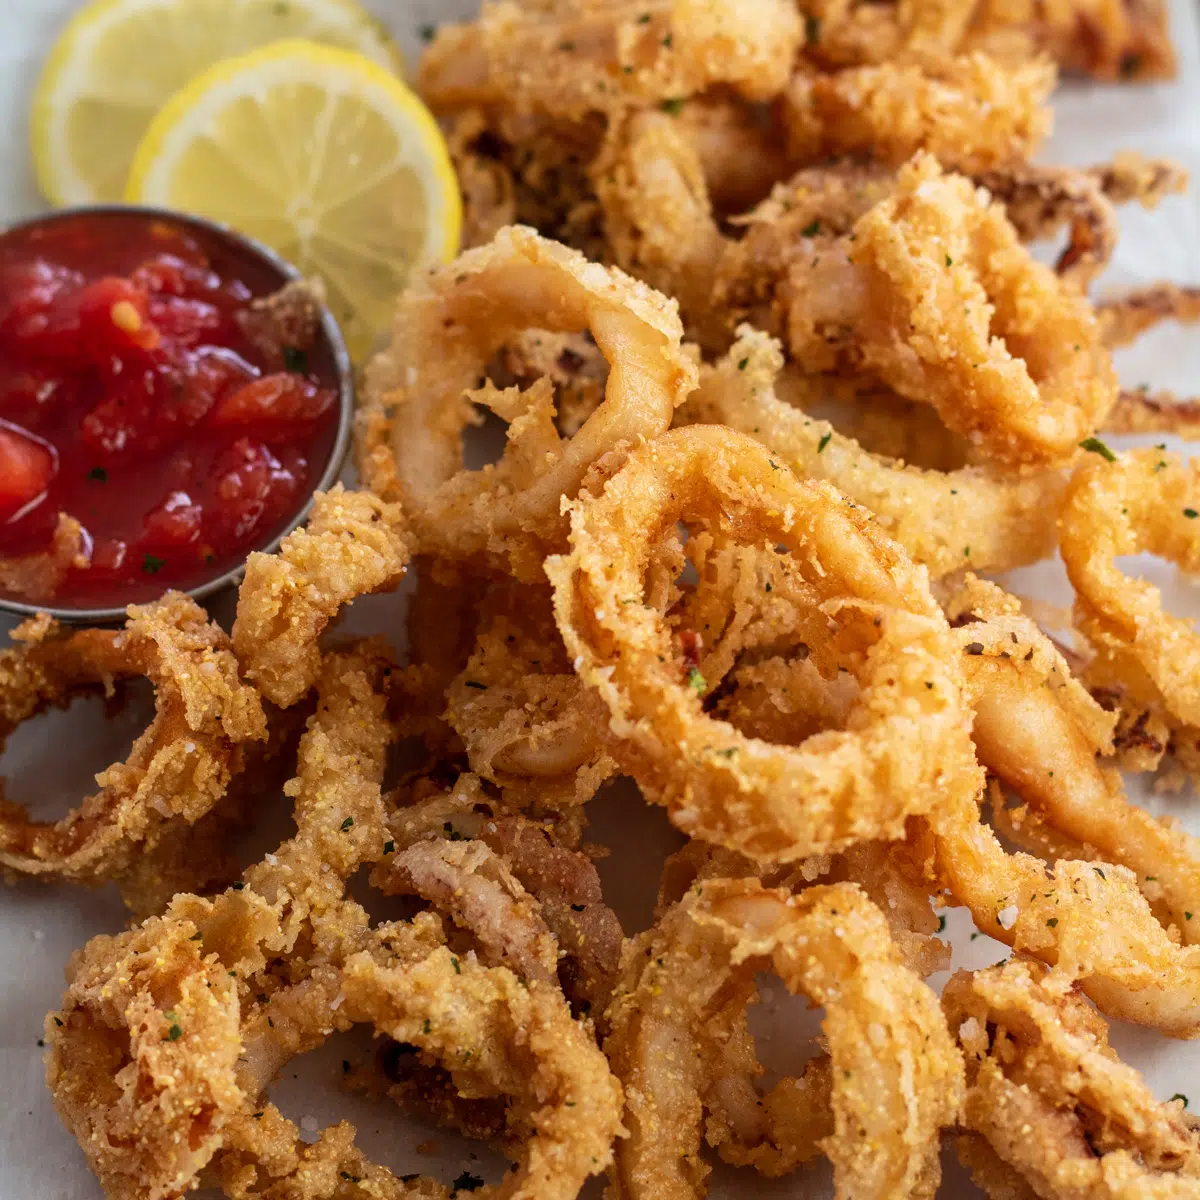 Primer plano de arriba en calamares fritos servidos en una sartén.